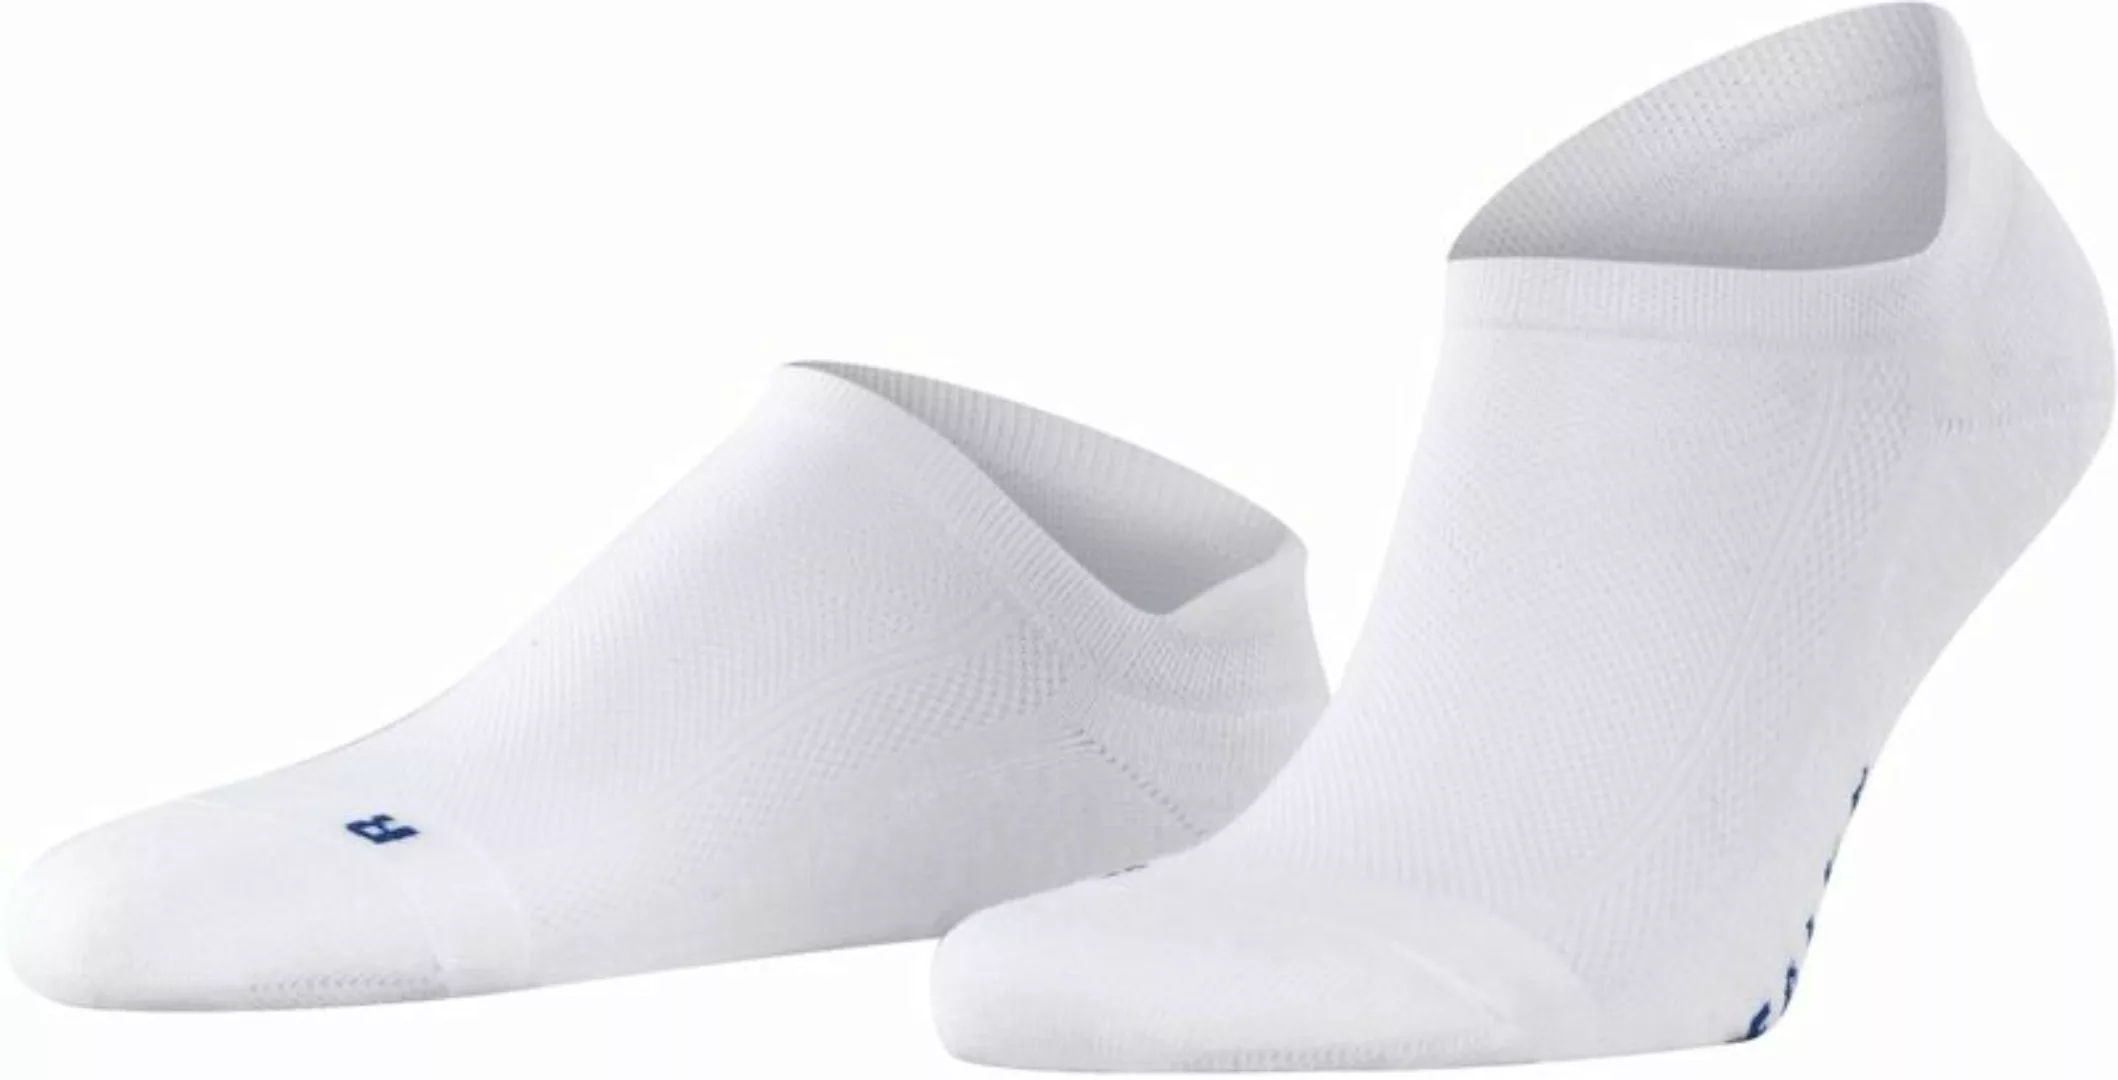 FALKE Cool Kick Trainer Socken Weiß - Größe 46-48 günstig online kaufen